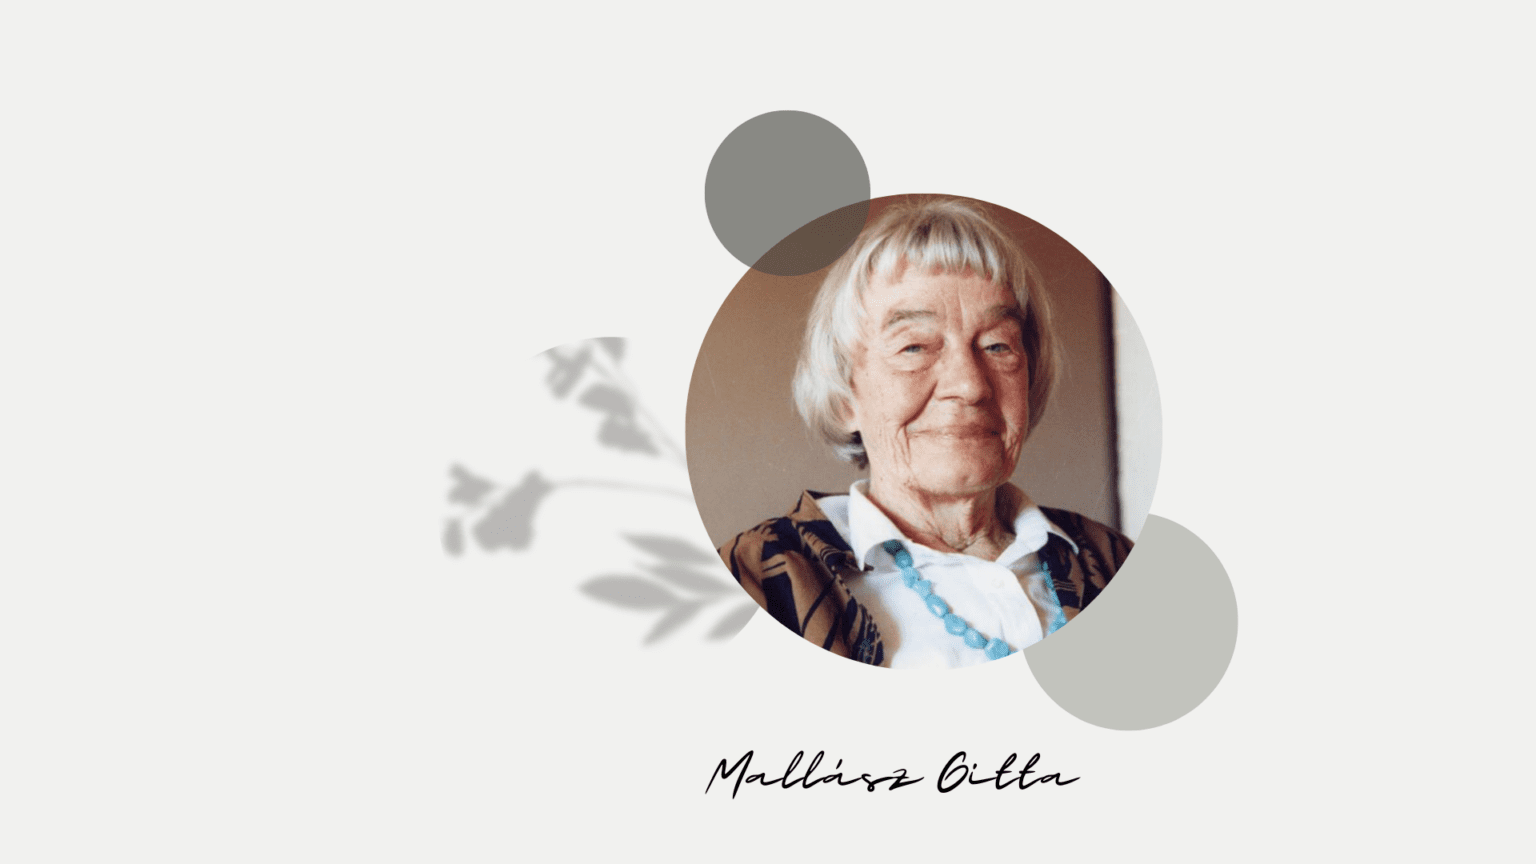 Egy magyar nő, akiért Juliette Binoche rajong – Mallász Gitta